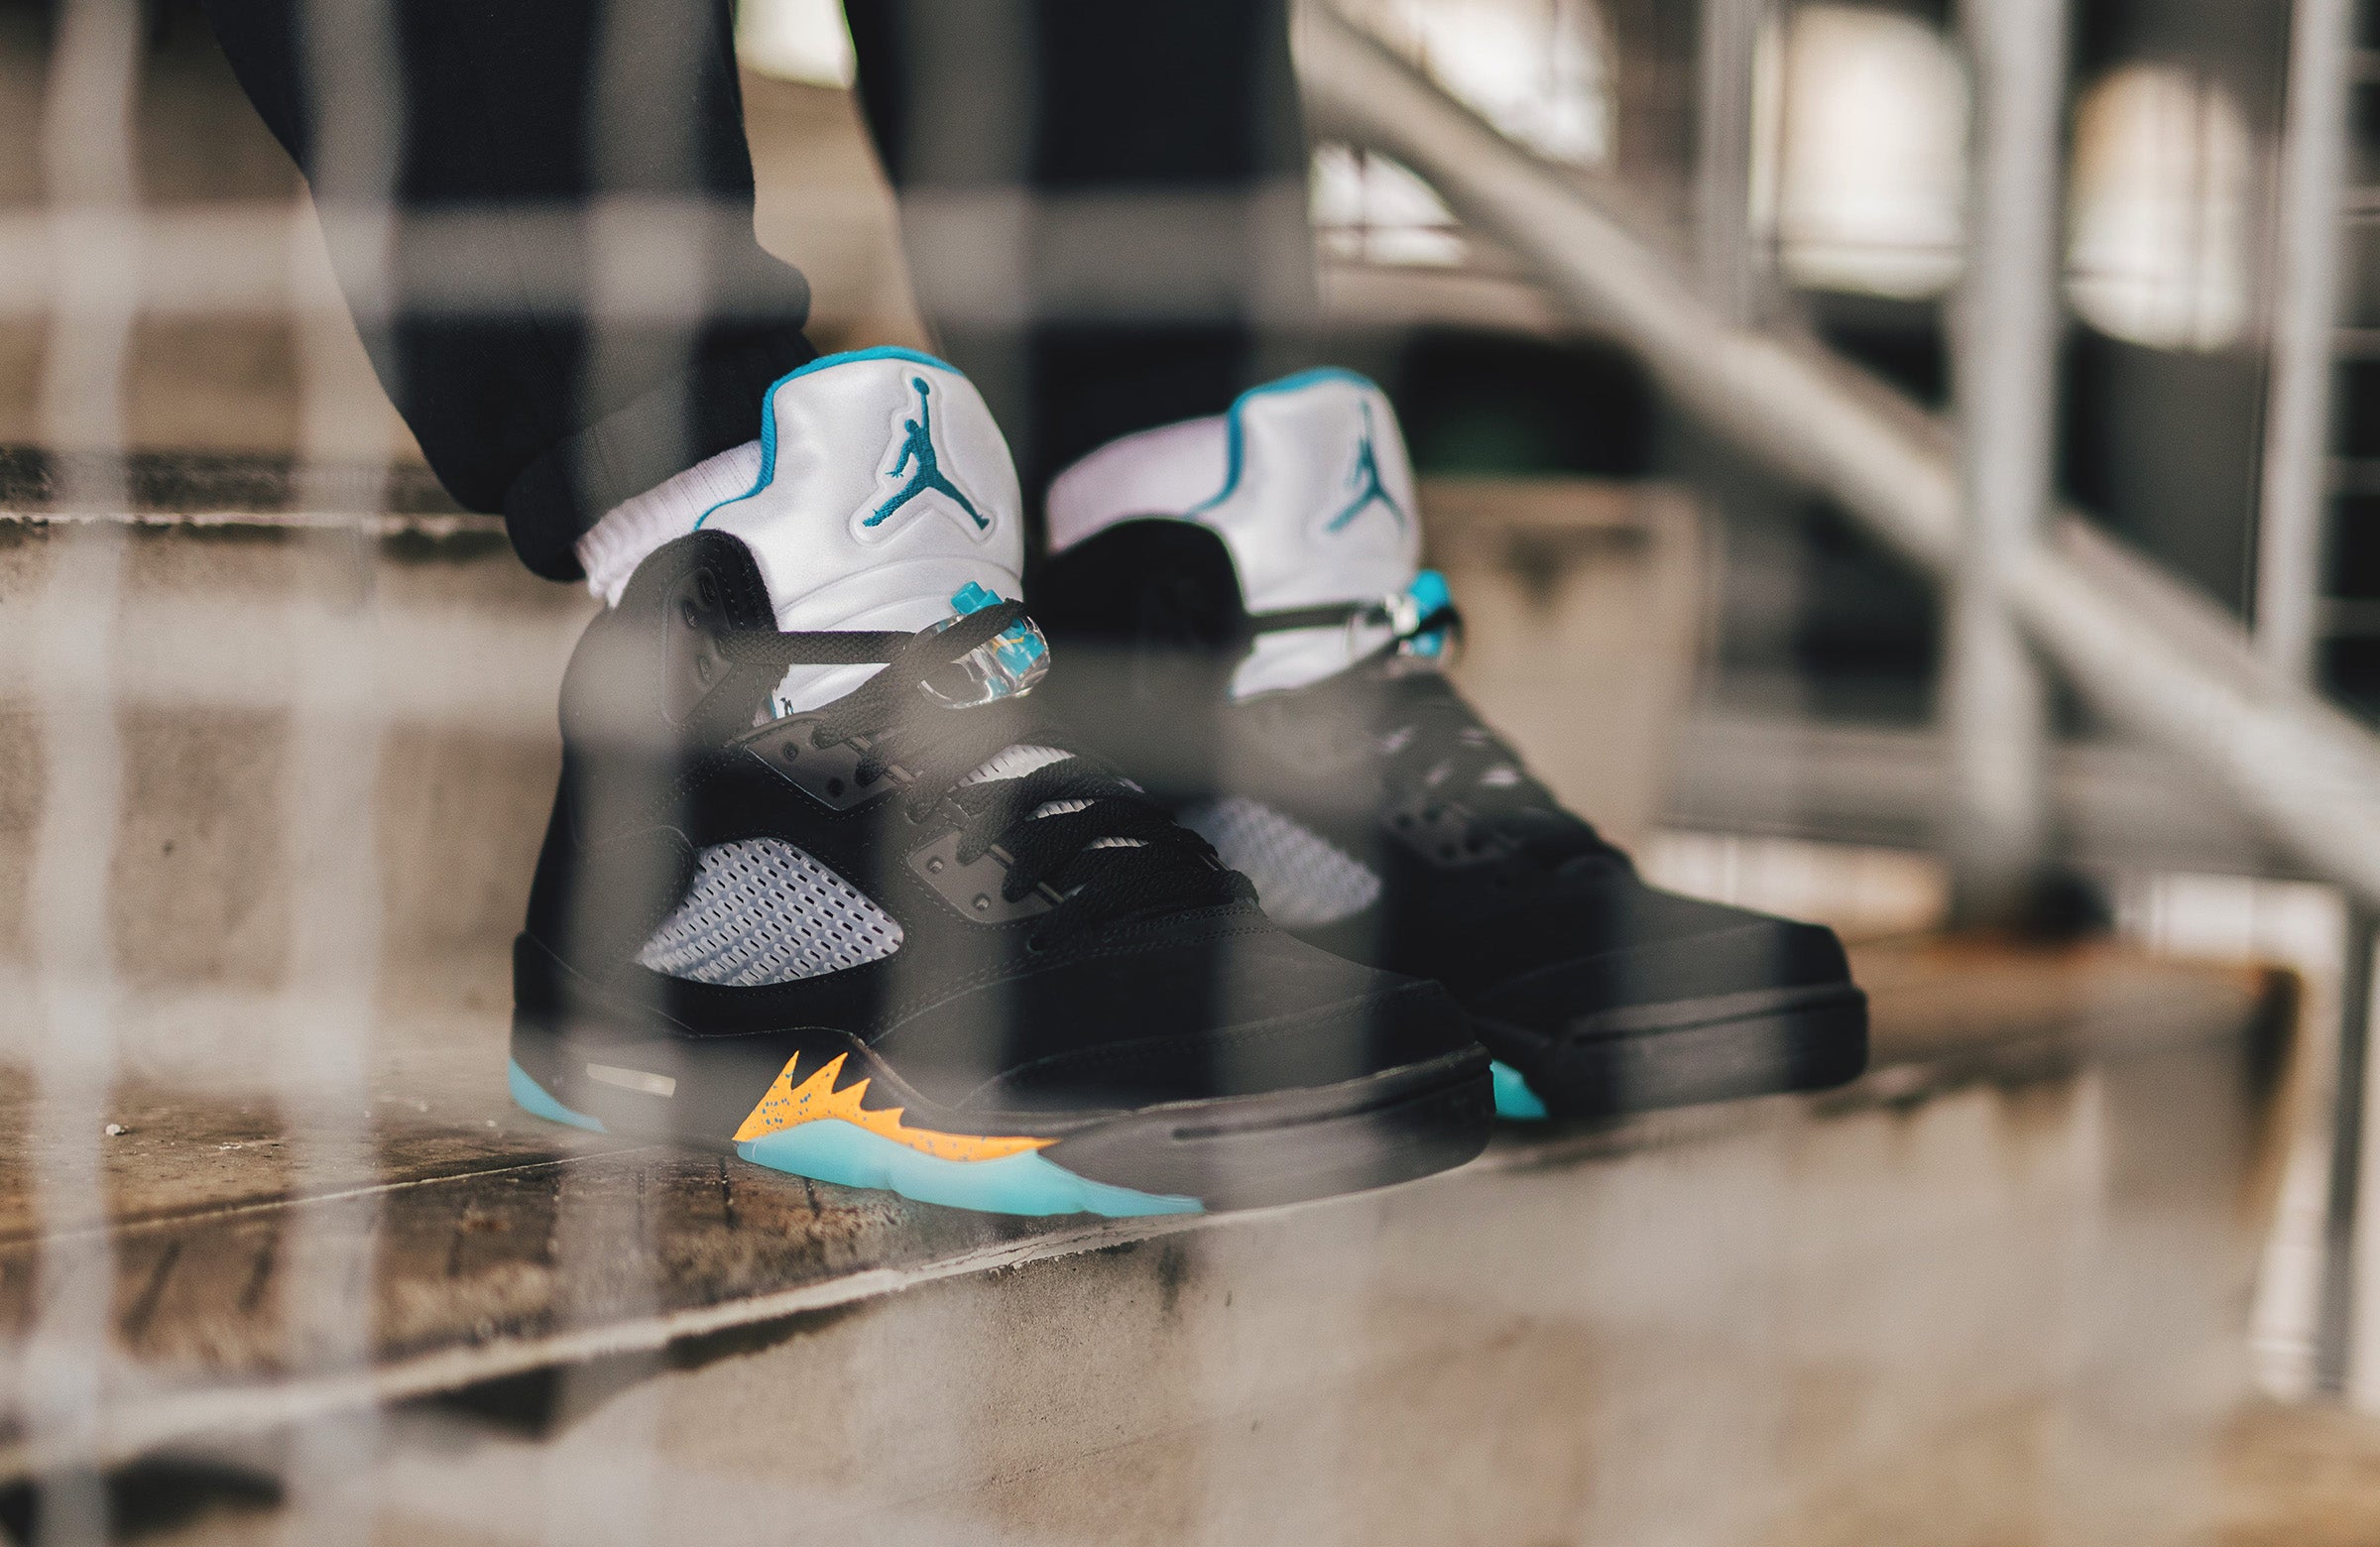 Coming Soon: Air Jordan 5 Retro “Aqua” – DTLR